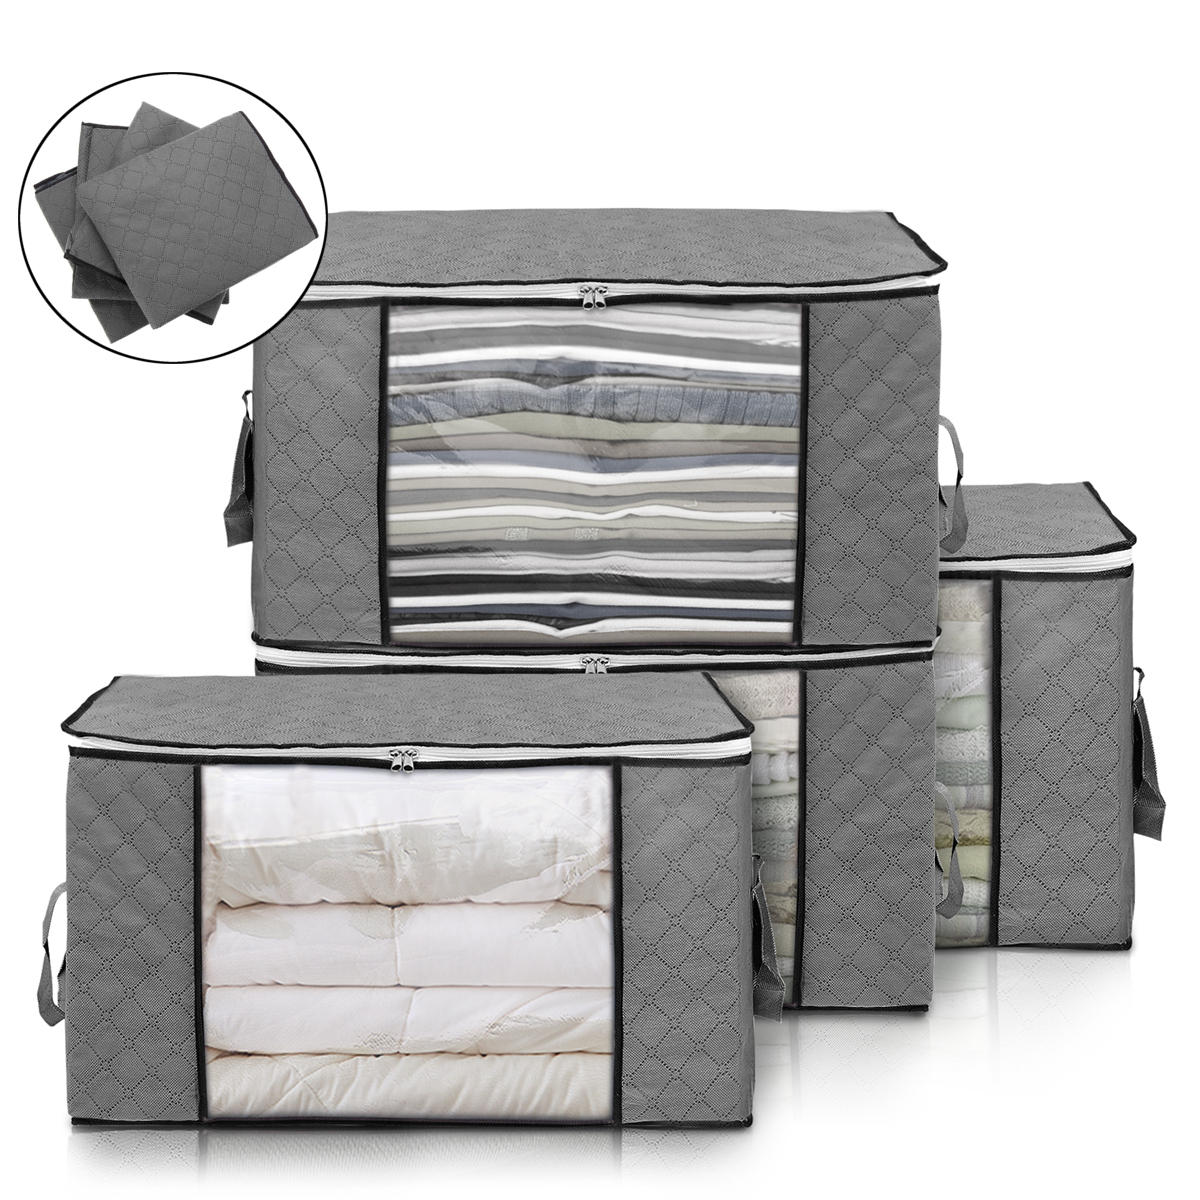 Conjunto de 4 sacos de armazenamento de roupas dobráveis de grande capacidade com alça reforçada, zíper resistente e tecido para guardar cobertores, edredons e outros itens no armário